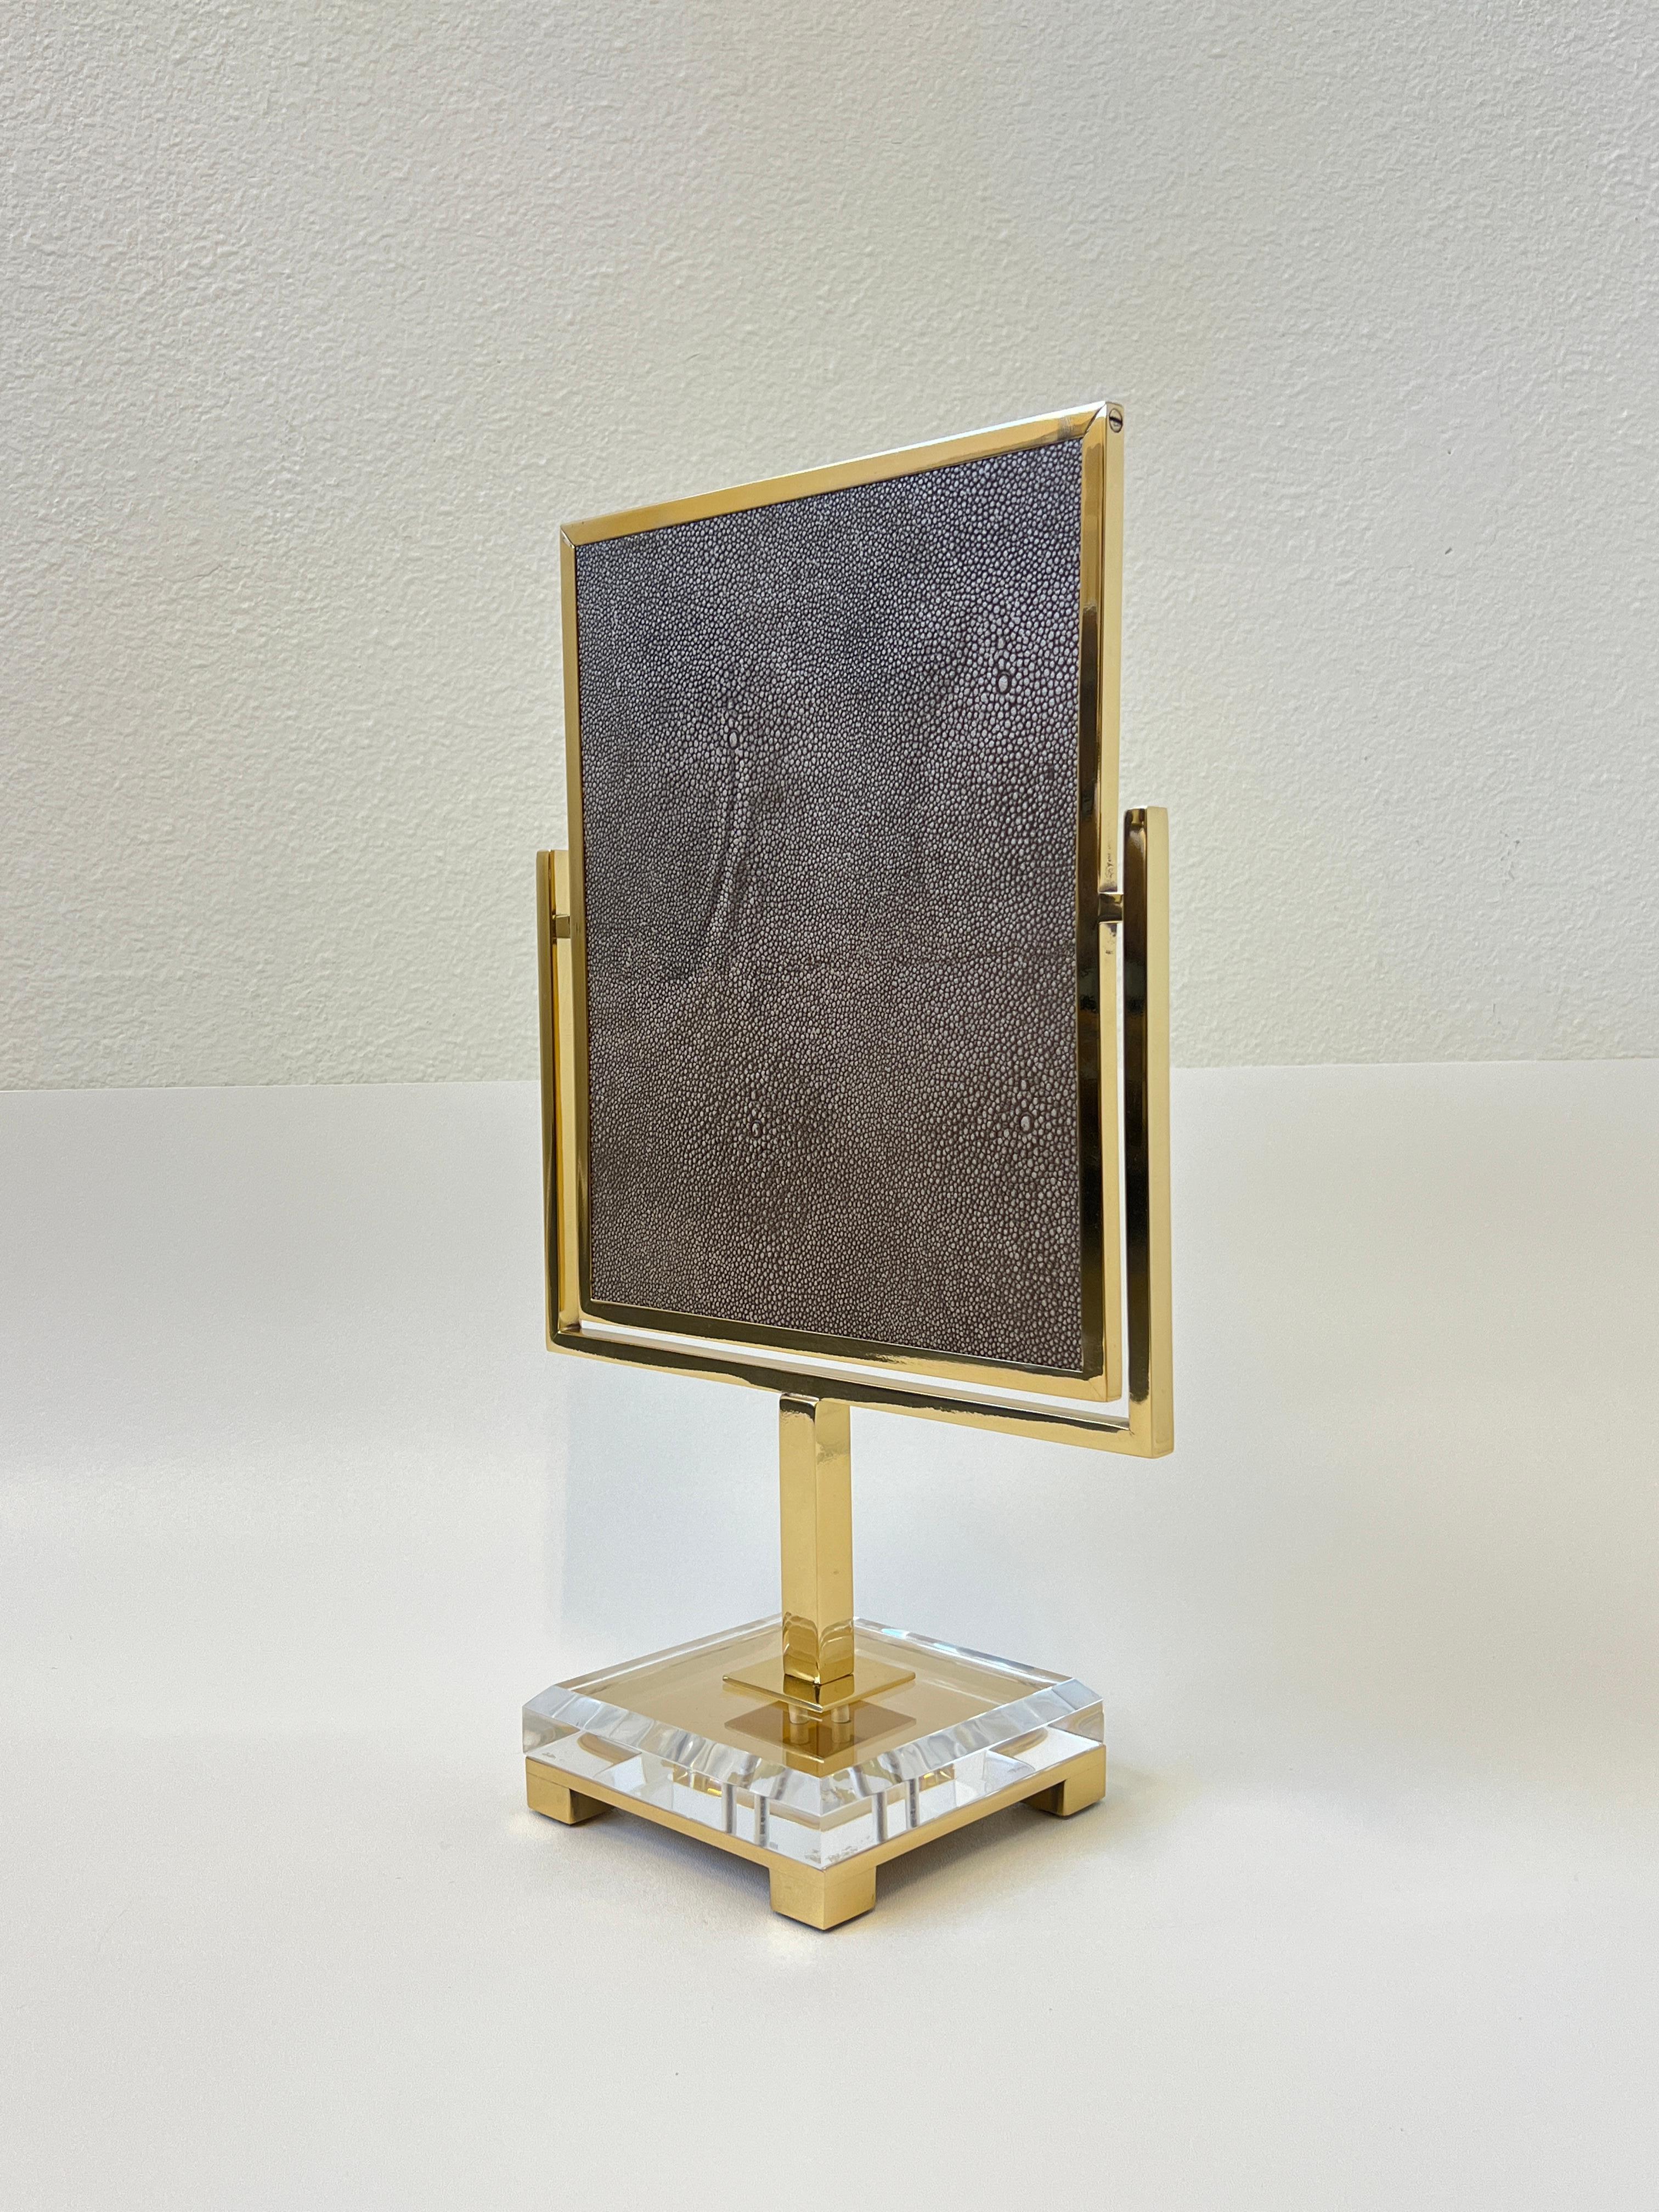 Un miroir de courtoisie glamour en laiton poli et en acrylique transparent par Charles Hollis Jones.
Le miroir est recouvert d'un faux cuir de galuchat brun. Elle a été conçue par Charles dans les années 1970. 
Nouvellement replaqué en finition